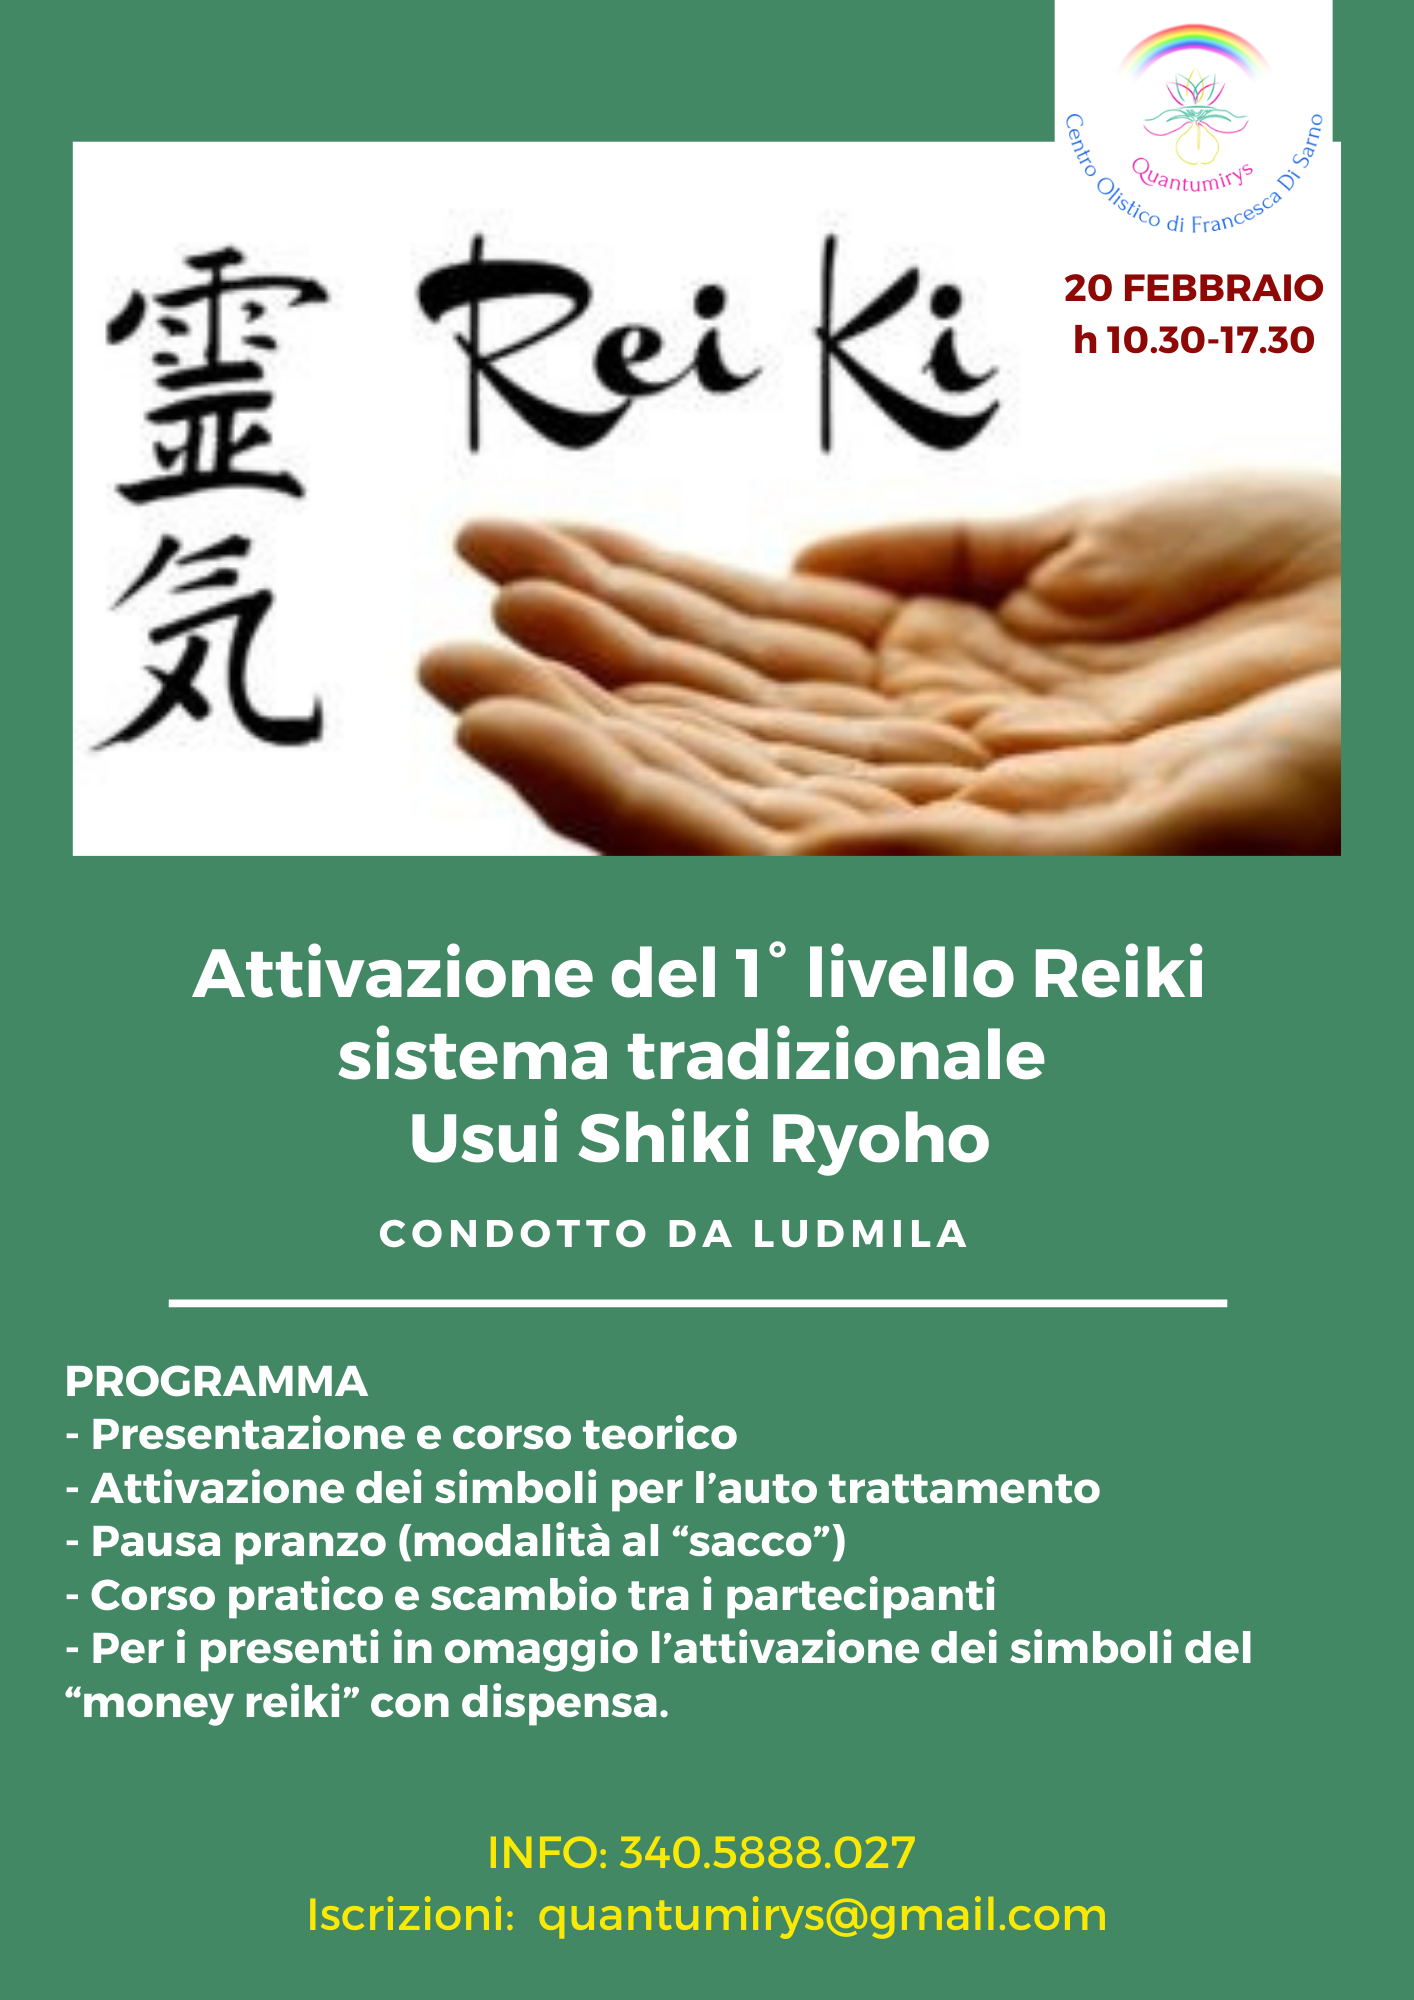 Attivazione del 1° livello Reiki sistema tradizionale Usui Shiki Ryoho.